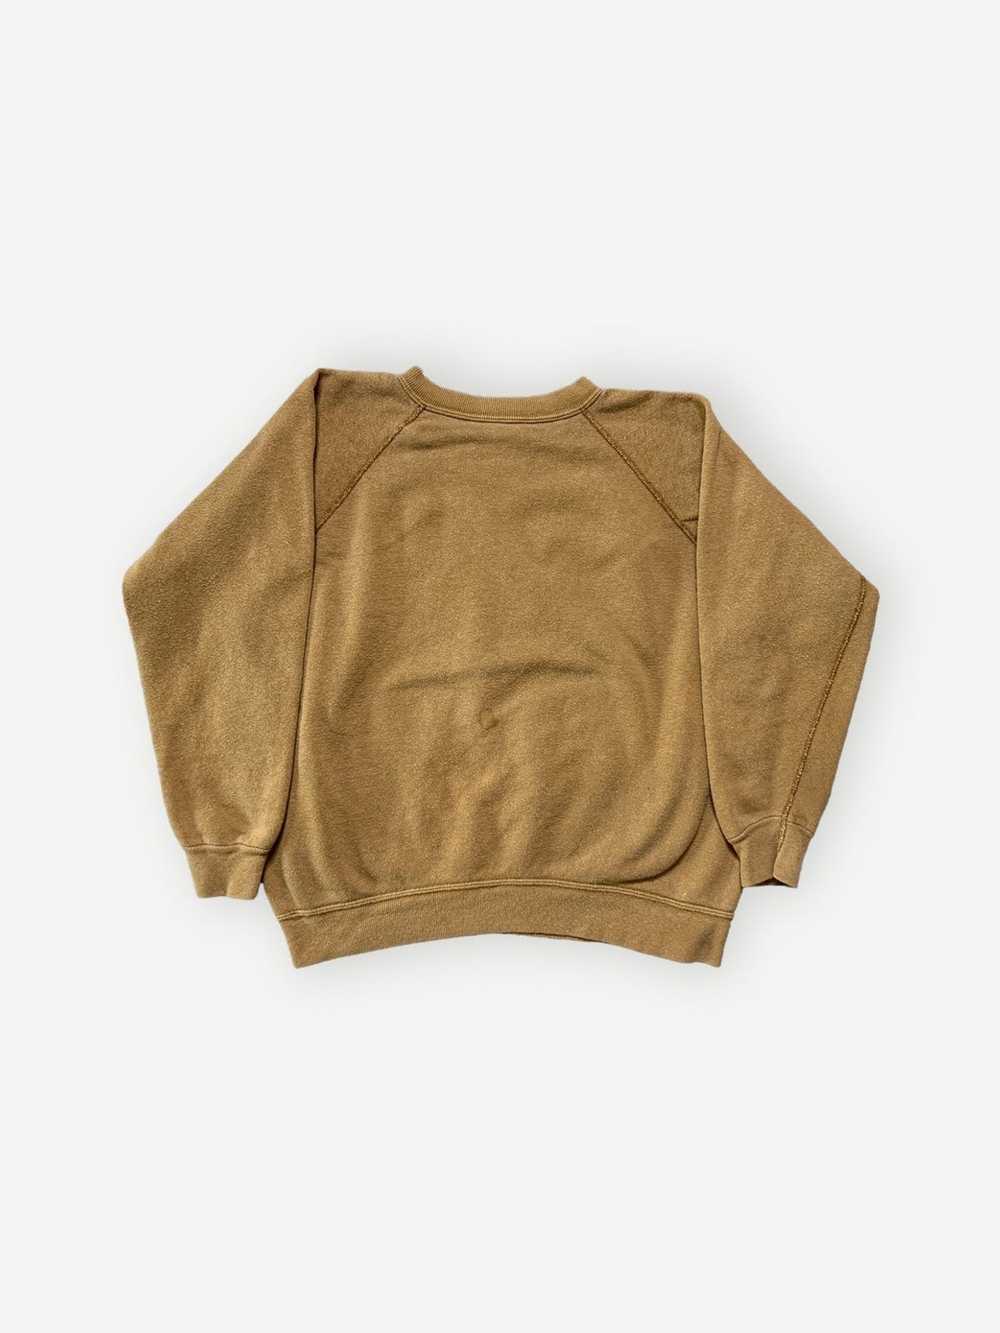 Vintage Vintage 60s/70s Gusset Blank Sweatshirt G… - image 5